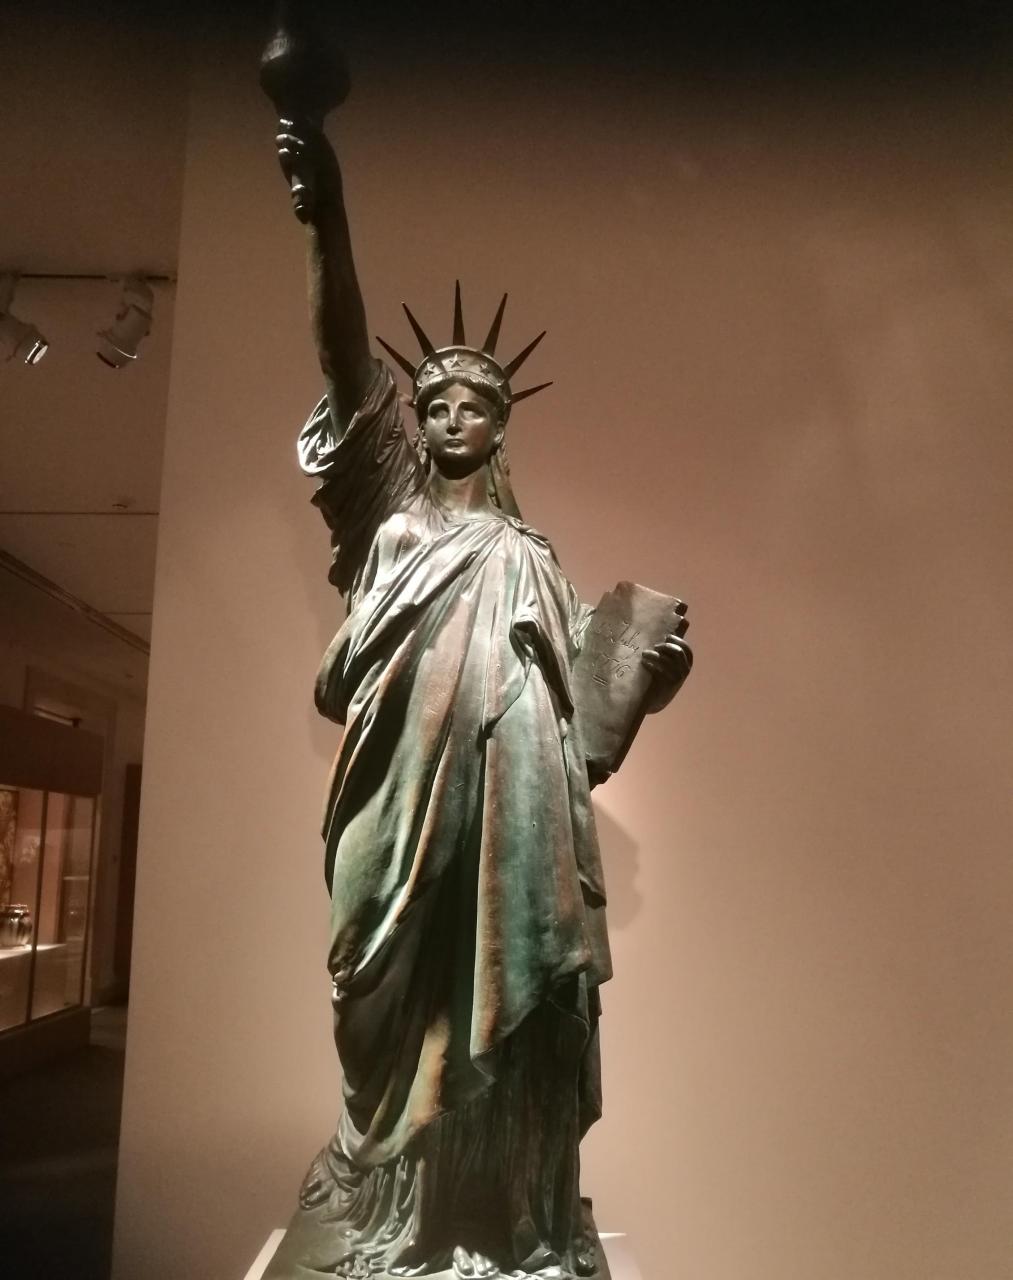 彩绘赤陶自由女神像是法国著名雕塑家弗雷德里克·奥古斯特·巴特勒迪